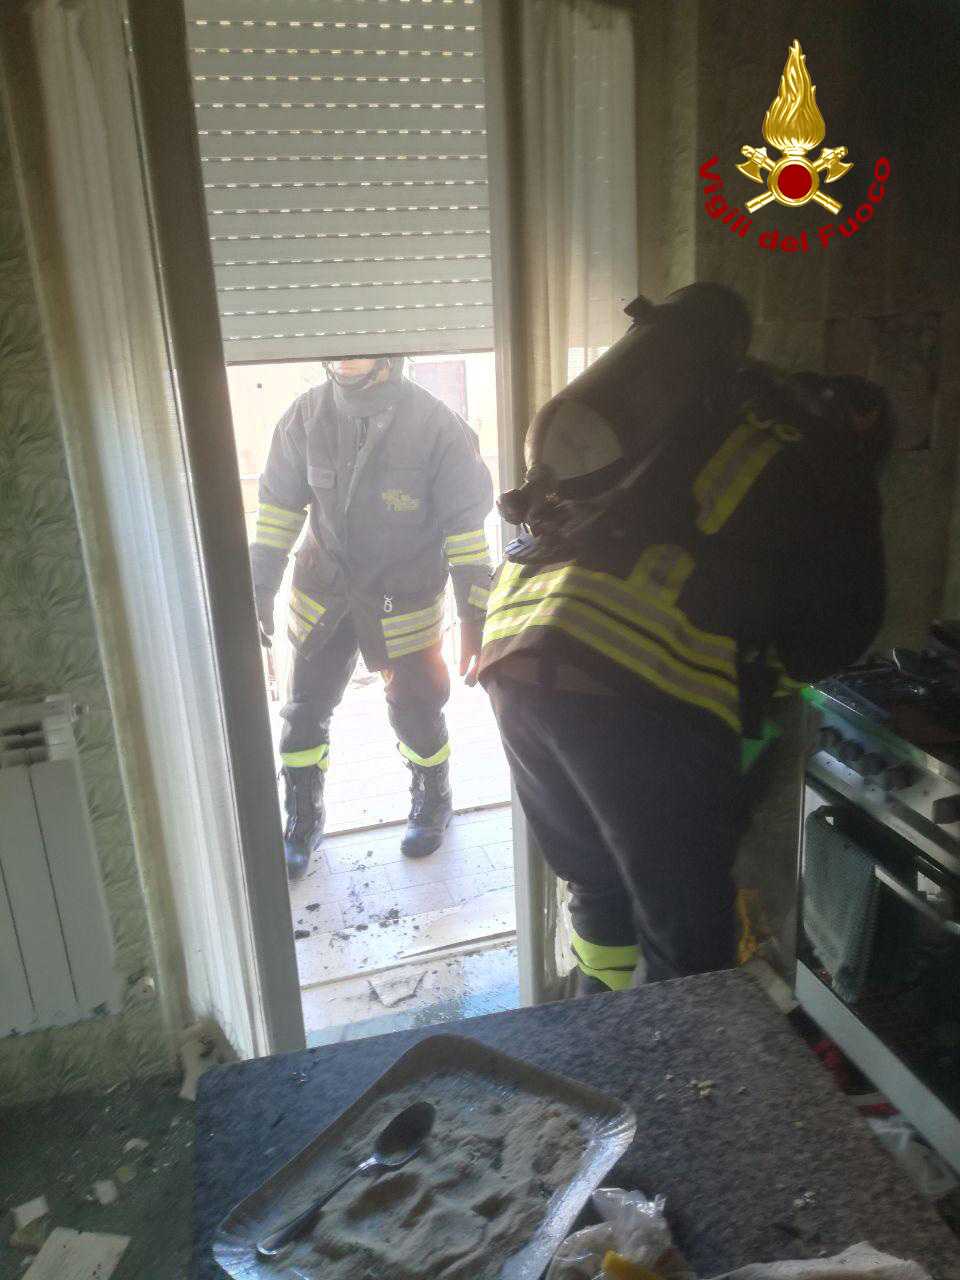 Famiglie in preda al panico per incendio appartamento a Crotone, tempestivo intervento dei VVF